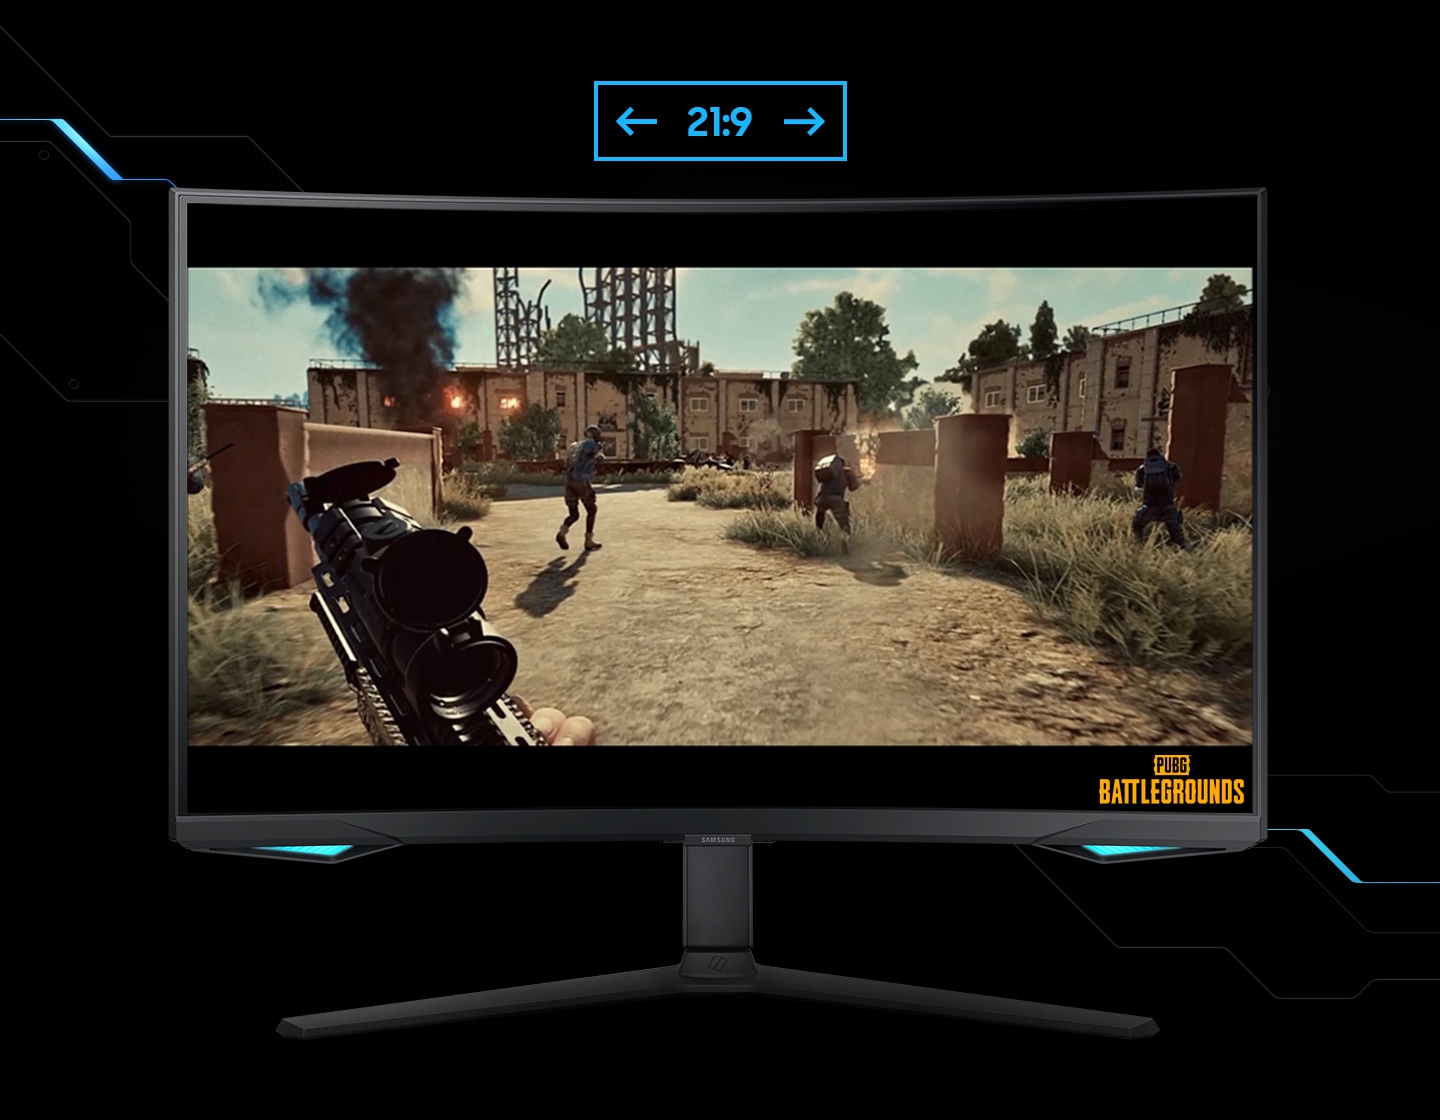 Monitor prikazuje zorno kot igralca v igri streljanja. Igralec teče po bojnem območju z mitraljezom. Ko je zaslon razširjen s razmerja 16:9 na 21:9, se v levem kotu pokaže nevidni sovražnik. Logotip "Battleground" je prikazan v spodnjem desnem kotu zaslona.